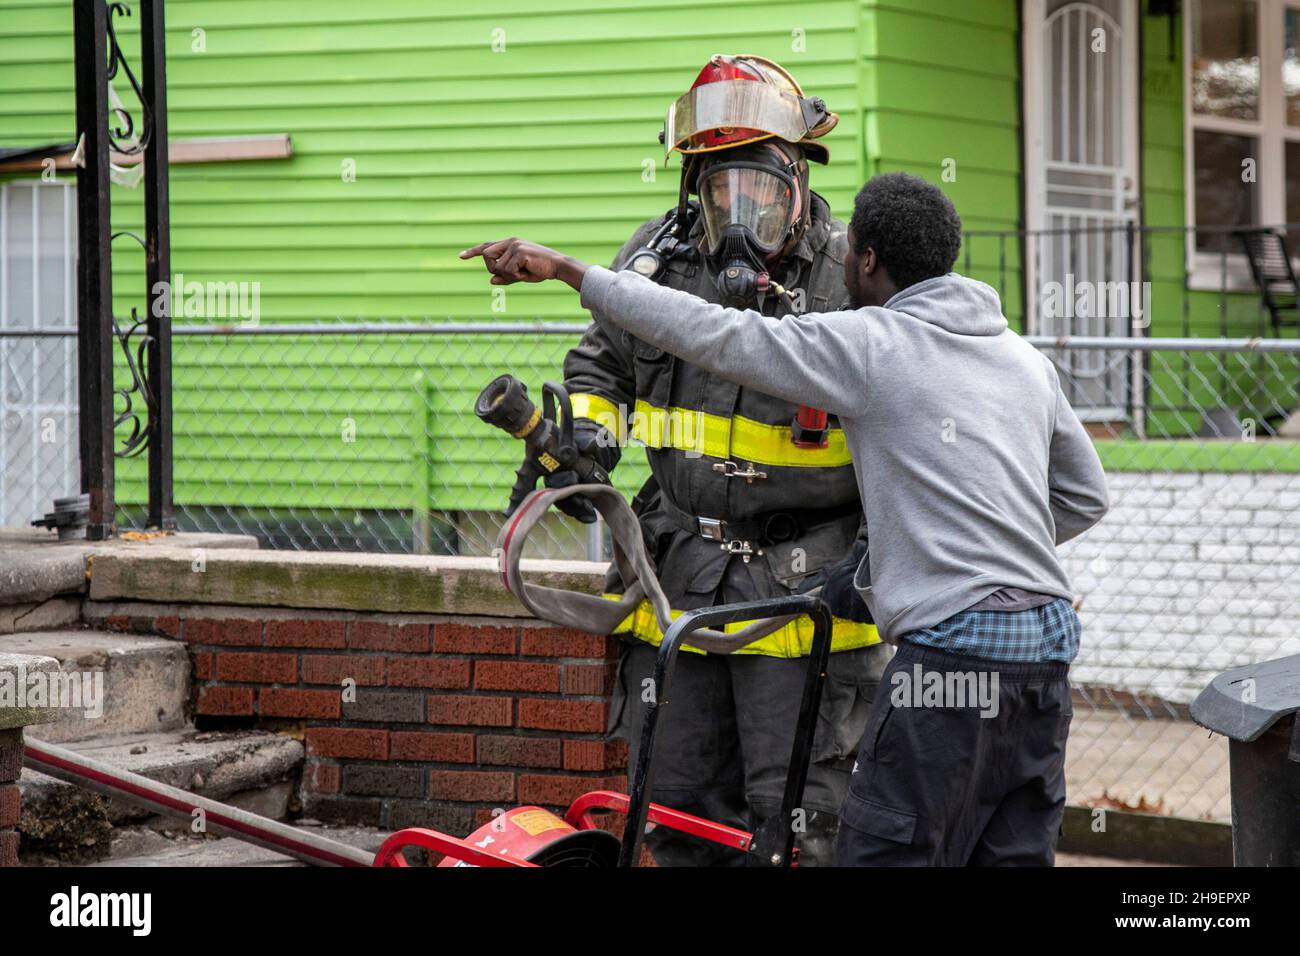 Detroit, Michigan - Ein Bewohner eines brennenden Hauses zeigt in das Gebäude, während er mit einem Feuerwehrmann spricht, der am Tatort ankommt. Das Feuer beschädigte ein Haus Stockfoto